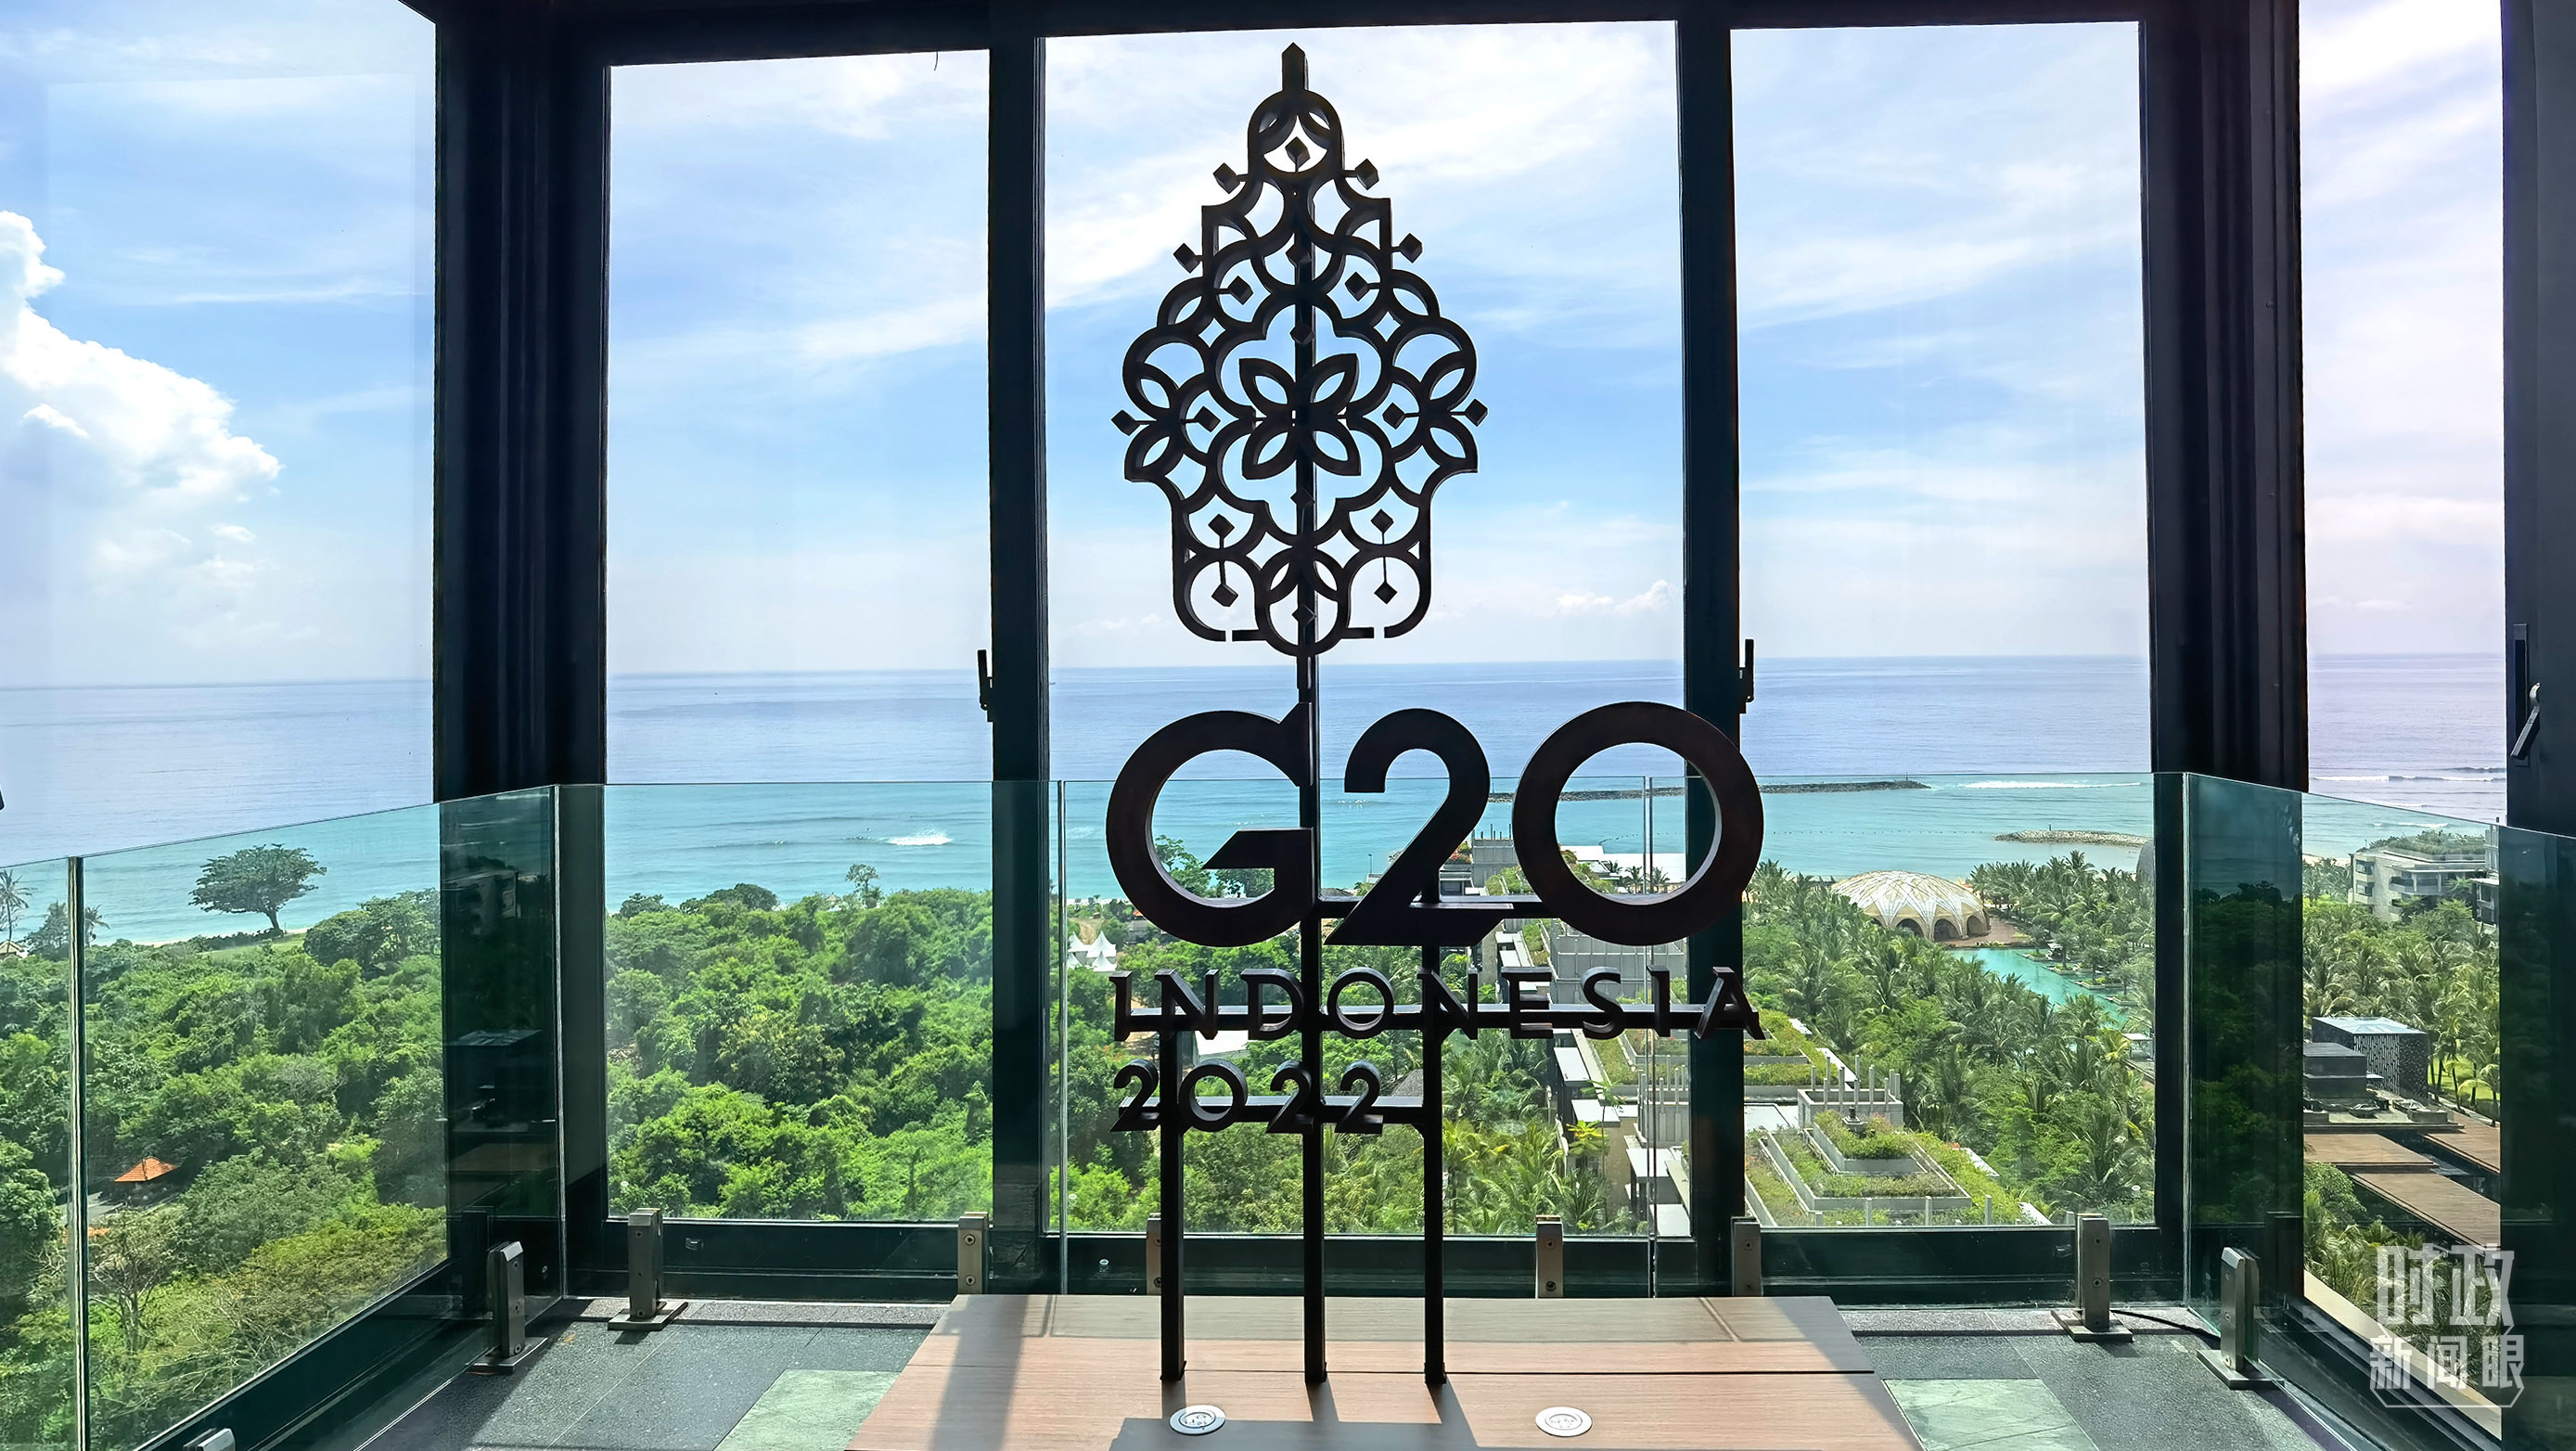 △巴厘岛峰会主会场内各处的G20标识。（总台央视记者马亚阳拍摄）